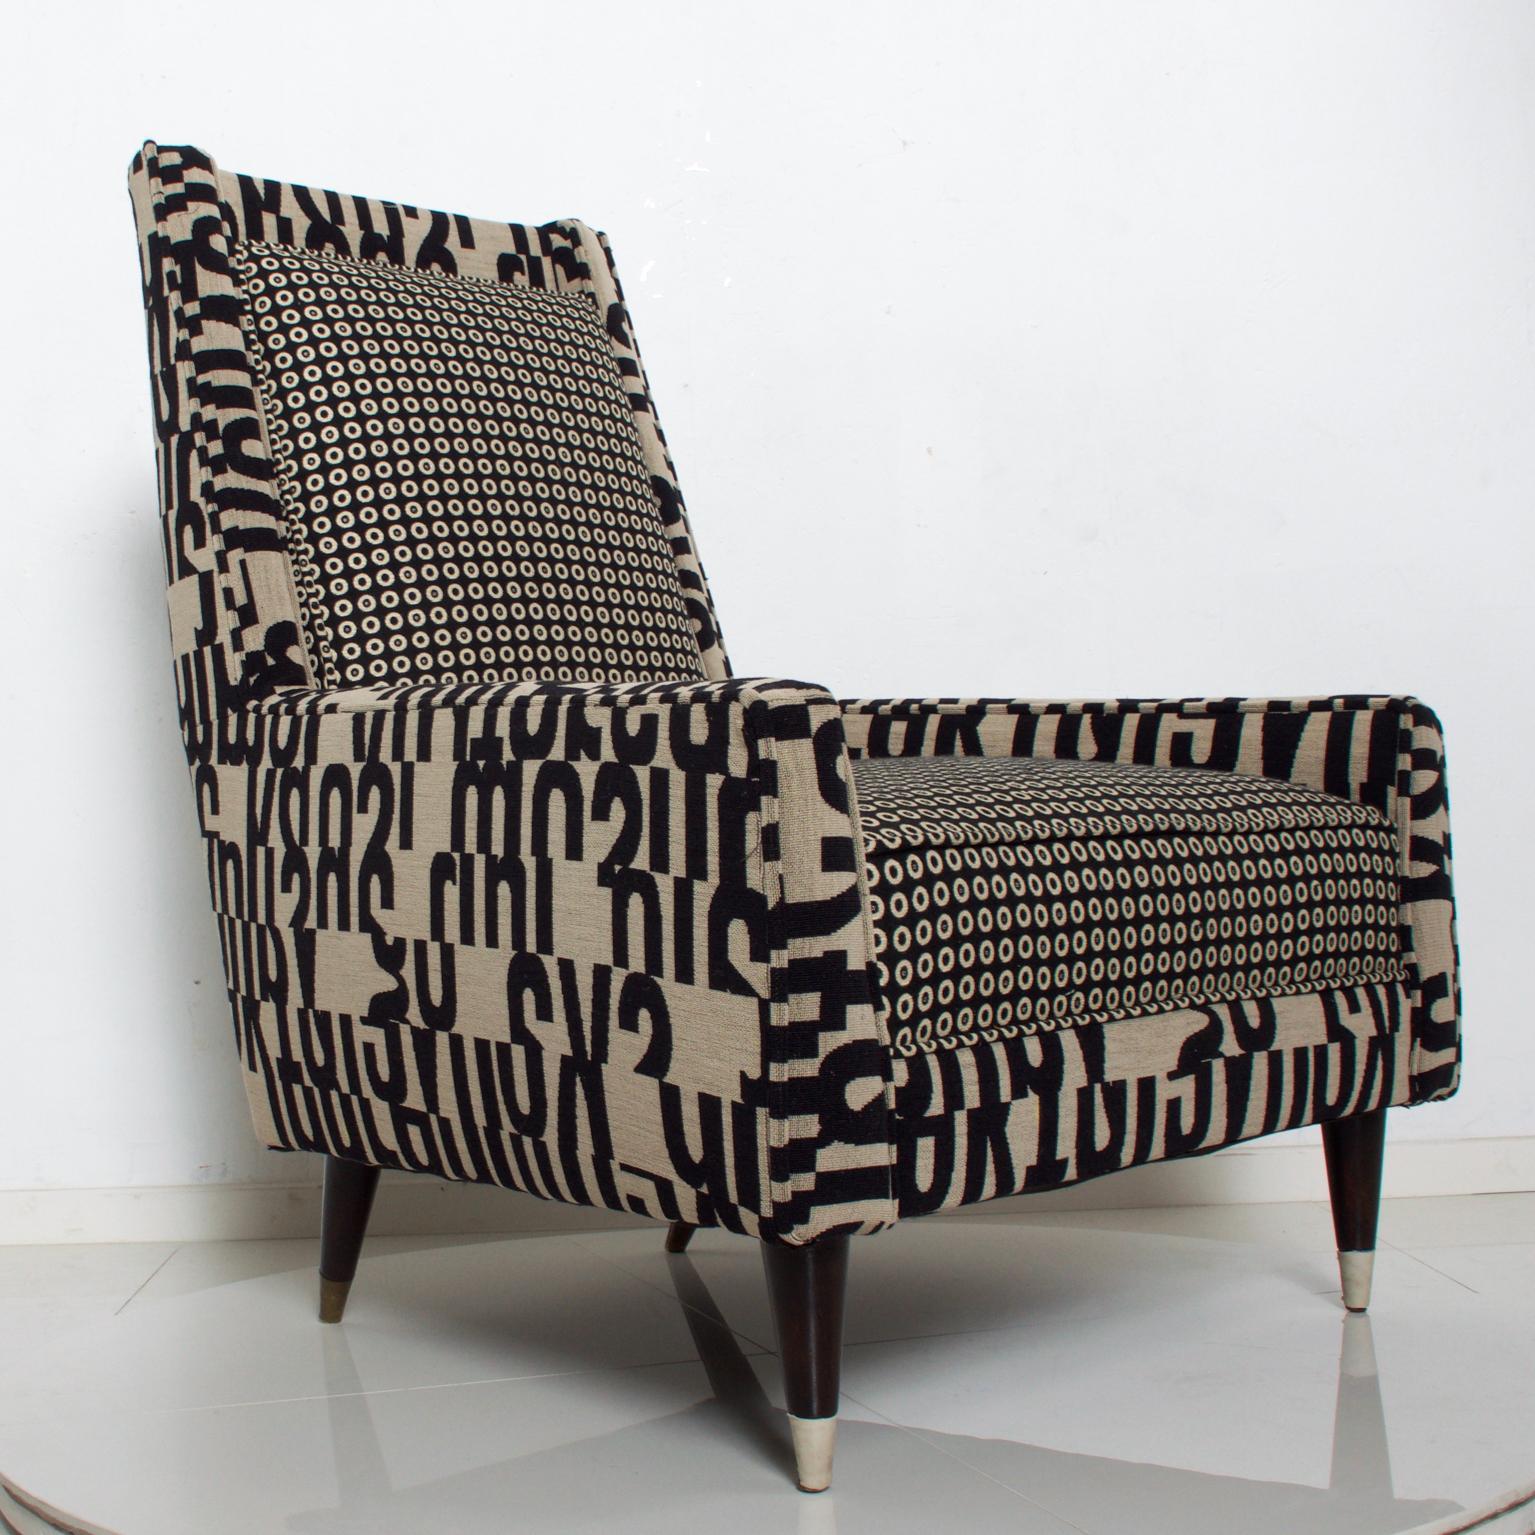 Fabric Gio Ponti Style by Arturo Pani Wild Wingback Lounge Chairs Midcentury Pair 1969